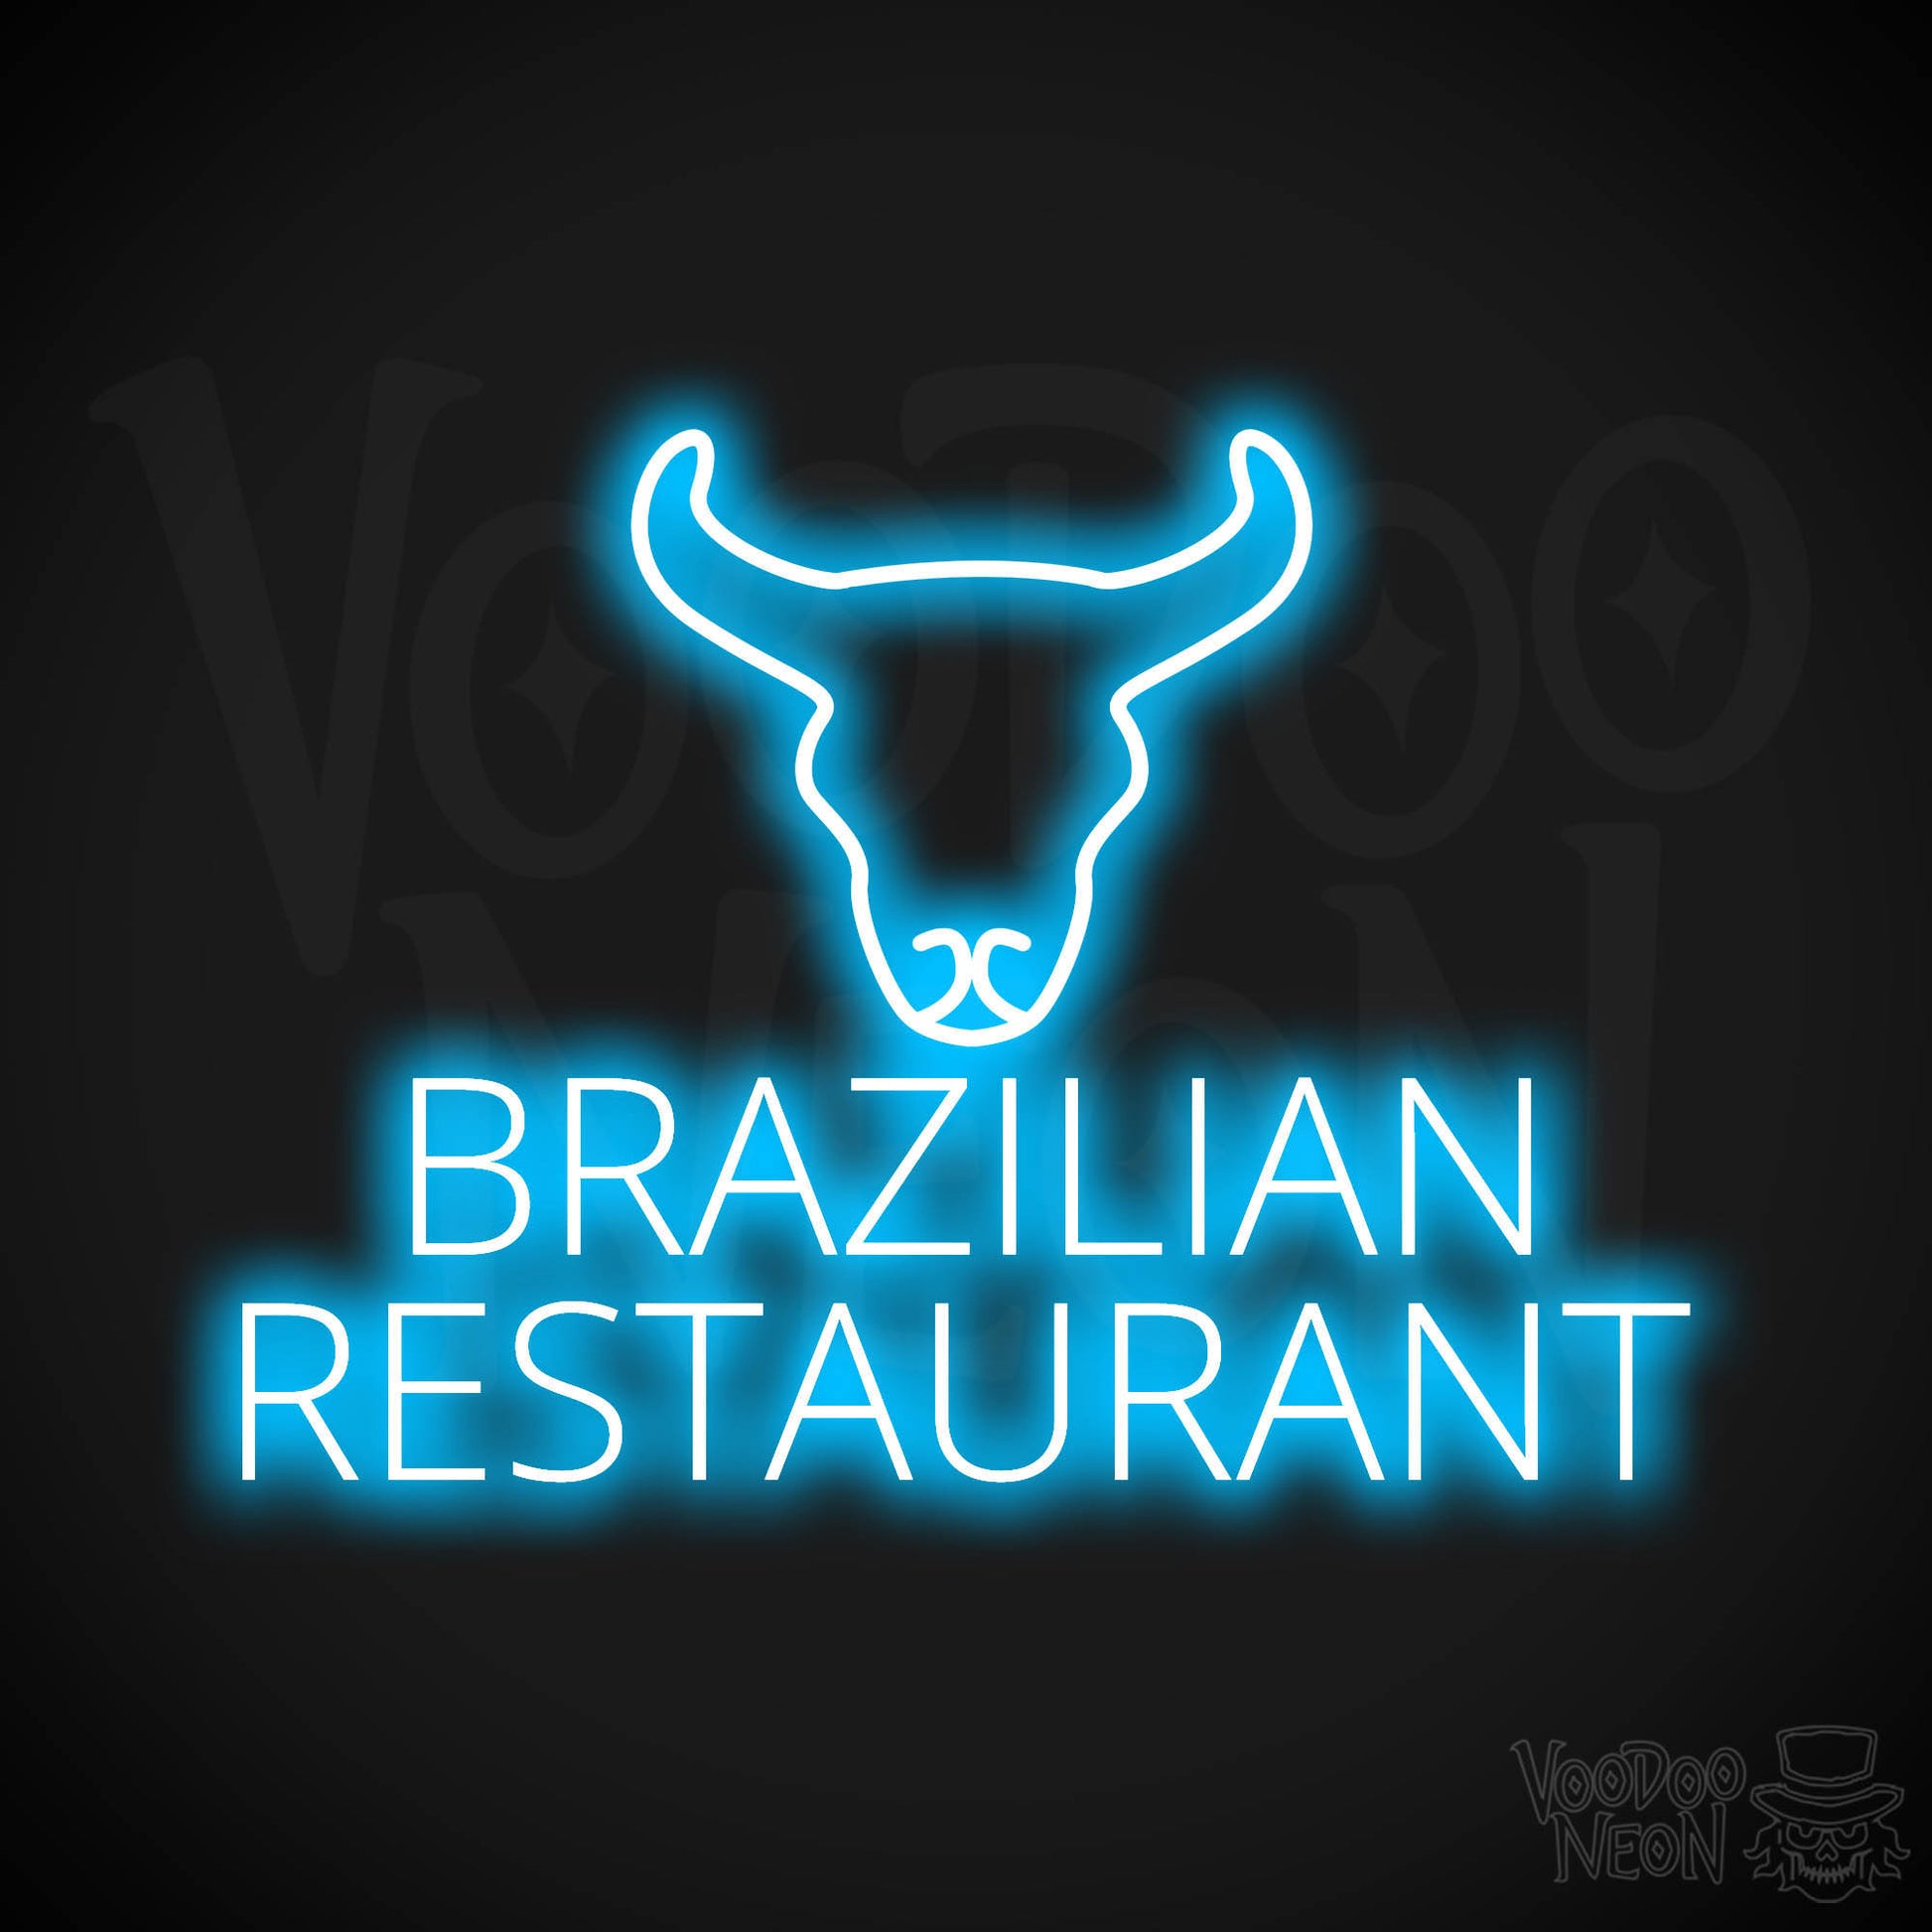 Brazilian Restaurant LED Neon - Dark Blue